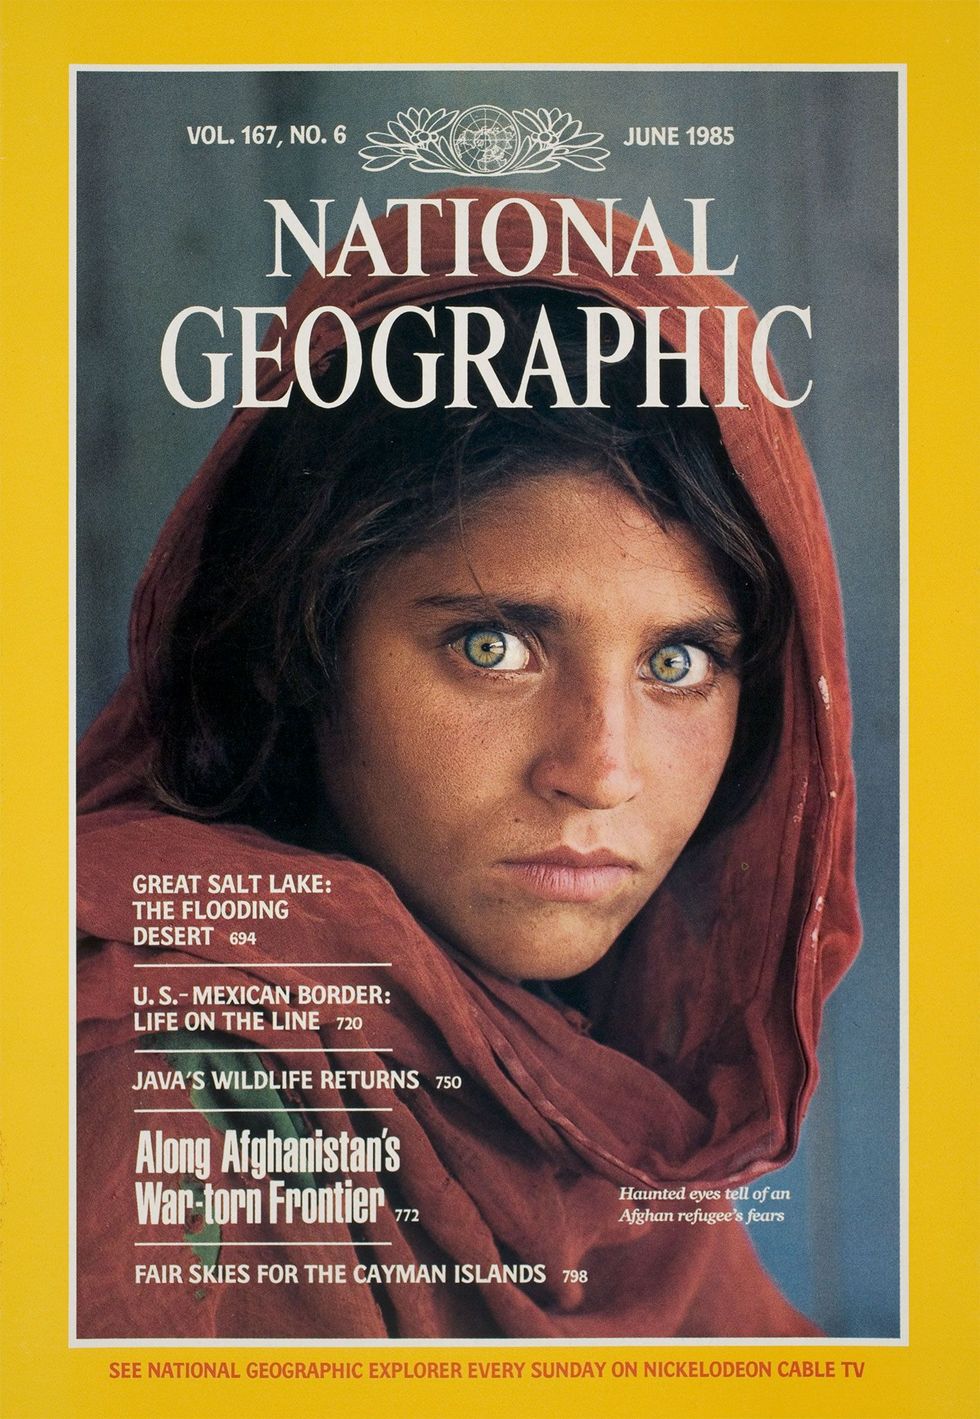 Het omslag van de National Geographic van juni 1985 die het Afghaanse meisje wereldberoemd maakte